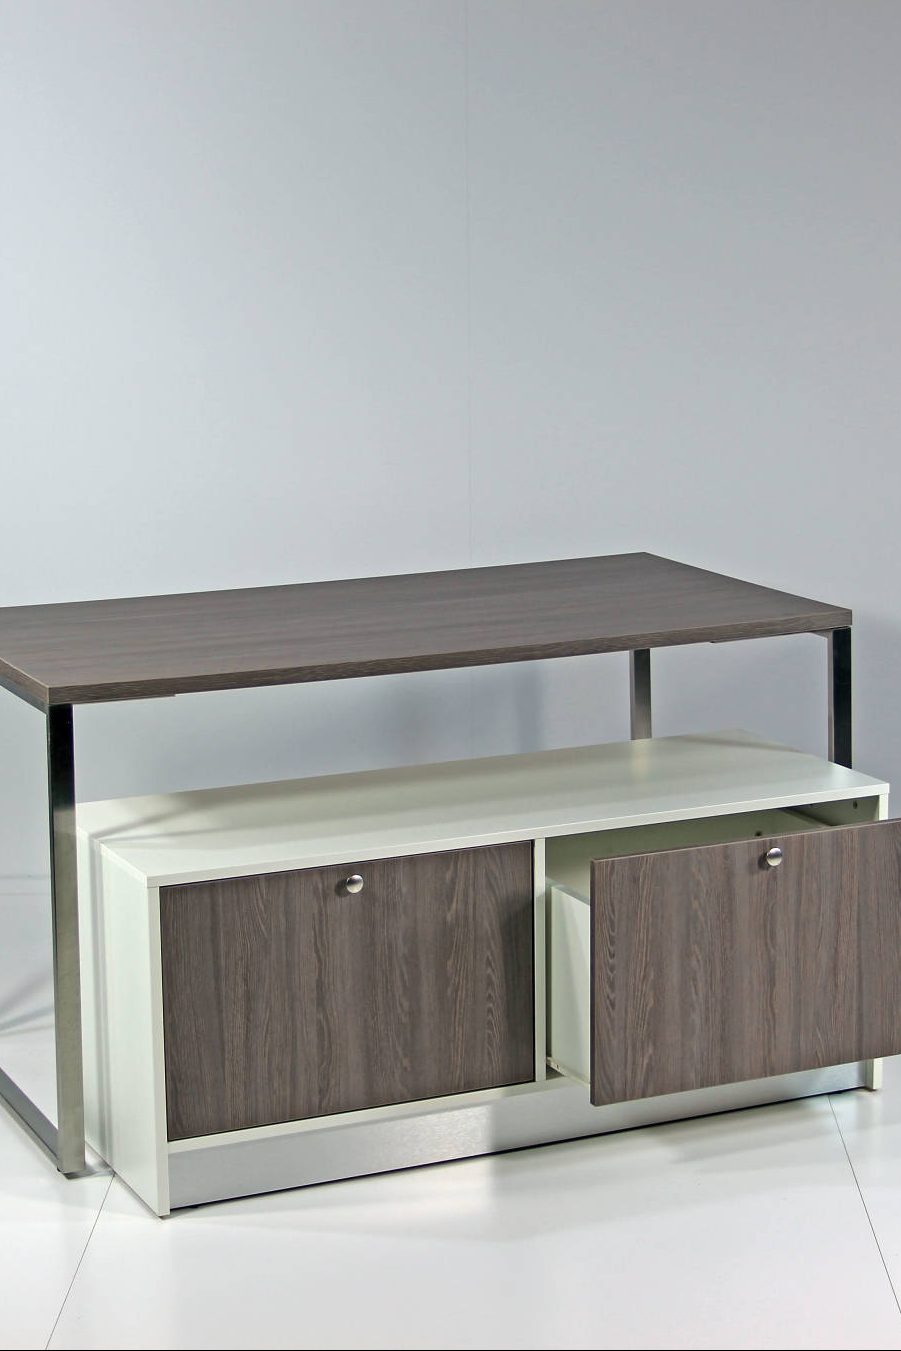 Depotreol / lager møbel er her anvendt som indskuds bord under et større bord.